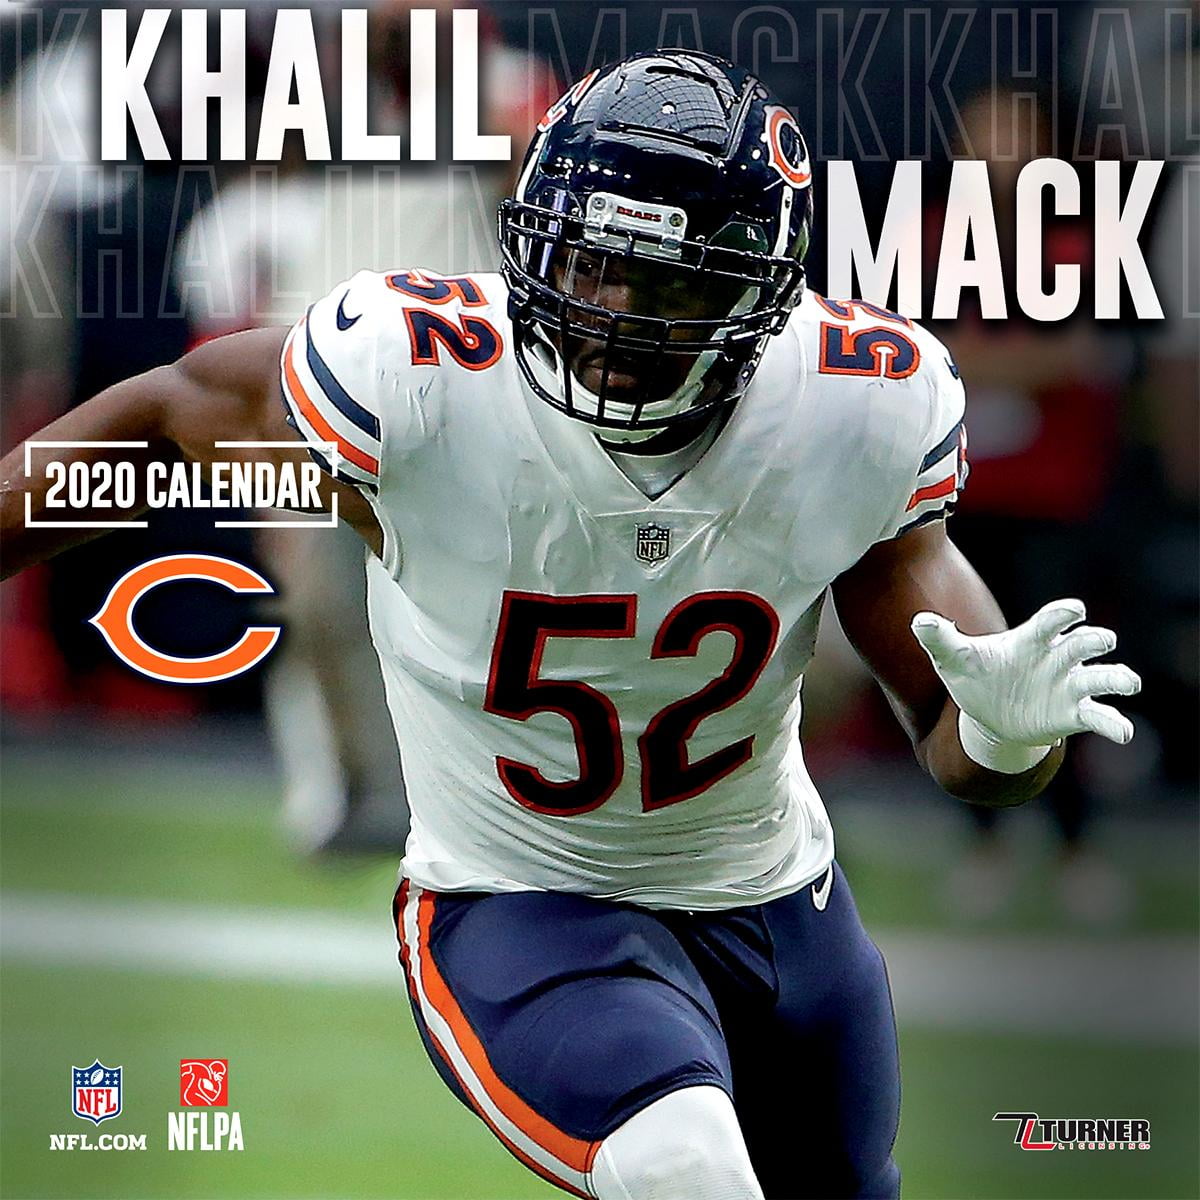 chicago-bears-khalil-mack-2020-12x12-player-wall-calendar-other-walmart